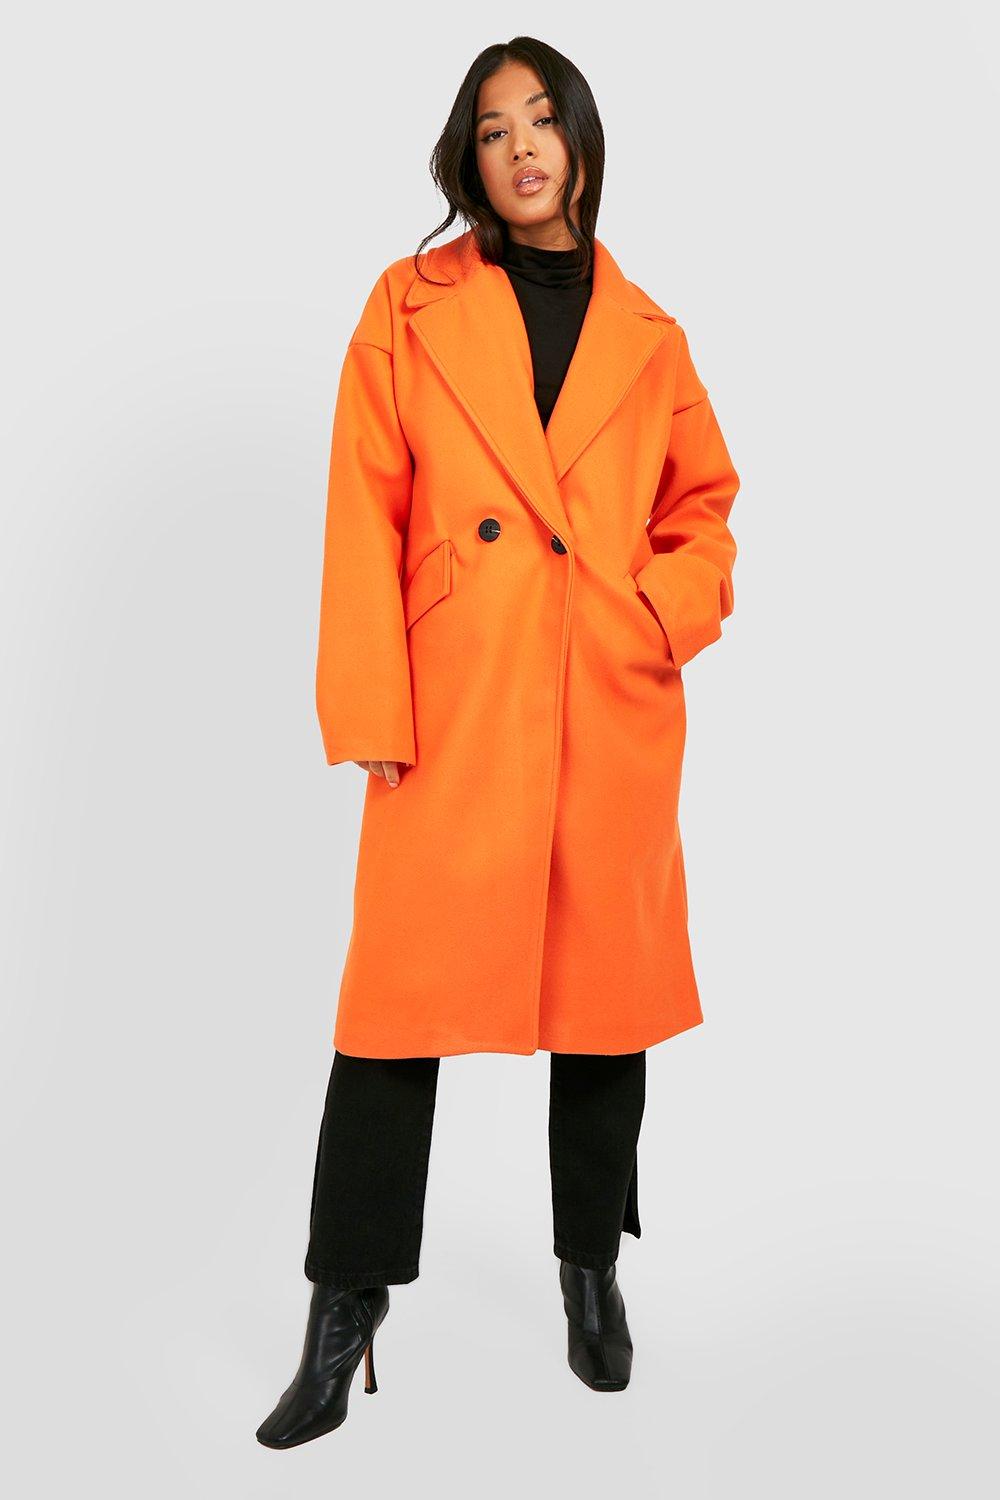 Womens Petite Wool Look Cocoon Coat - Orange - 4, Orange